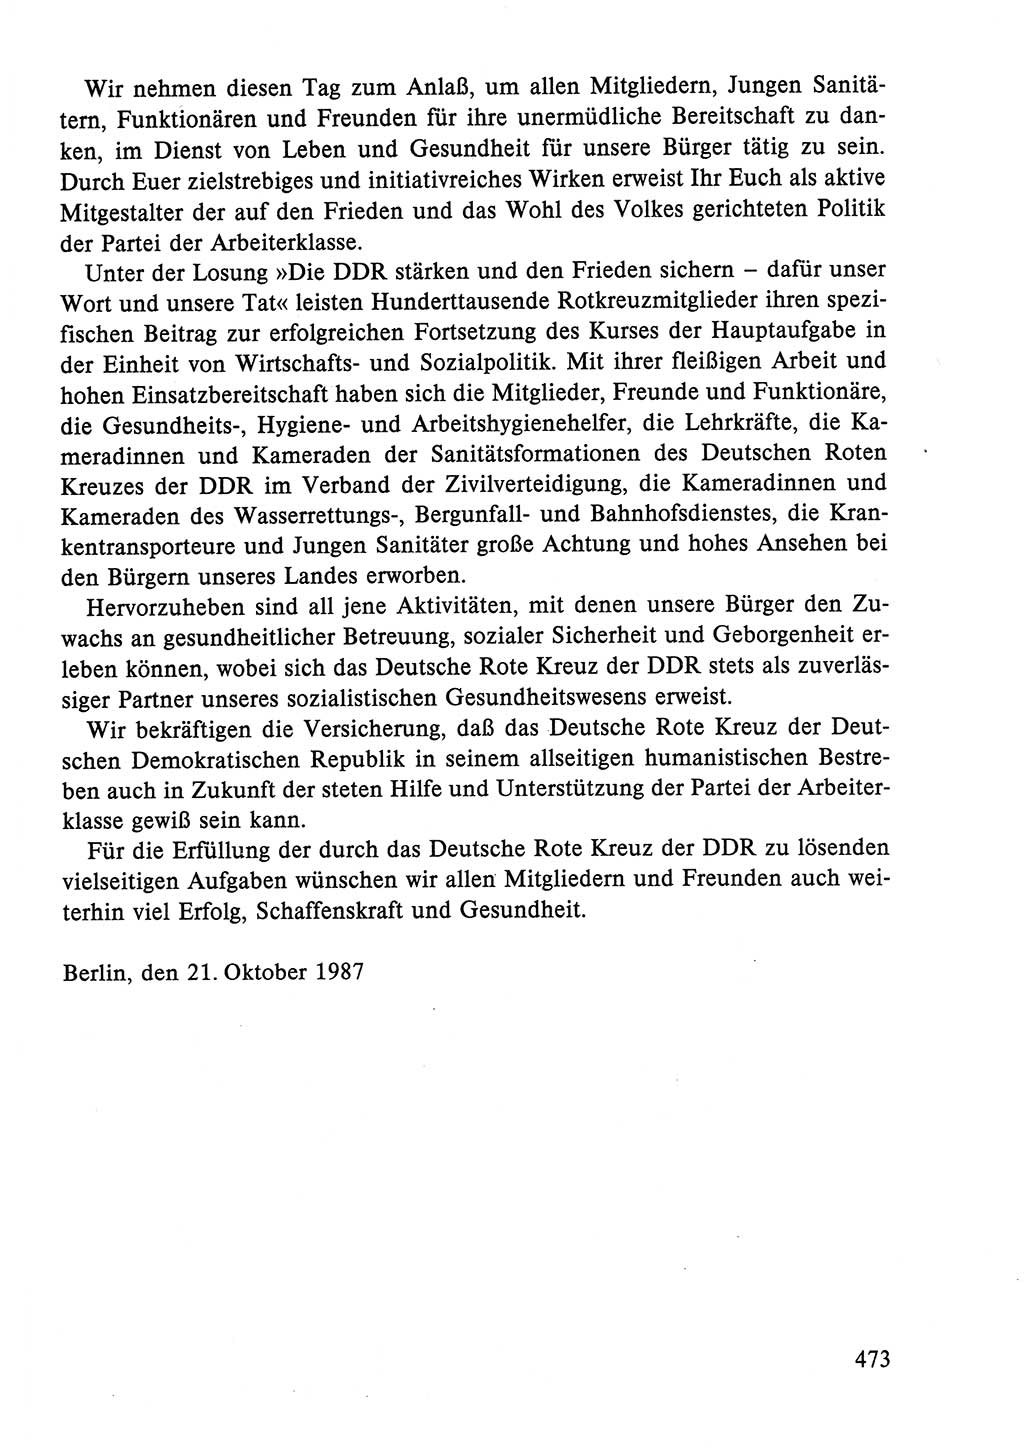 Dokumente der Sozialistischen Einheitspartei Deutschlands (SED) [Deutsche Demokratische Republik (DDR)] 1986-1987, Seite 473 (Dok. SED DDR 1986-1987, S. 473)